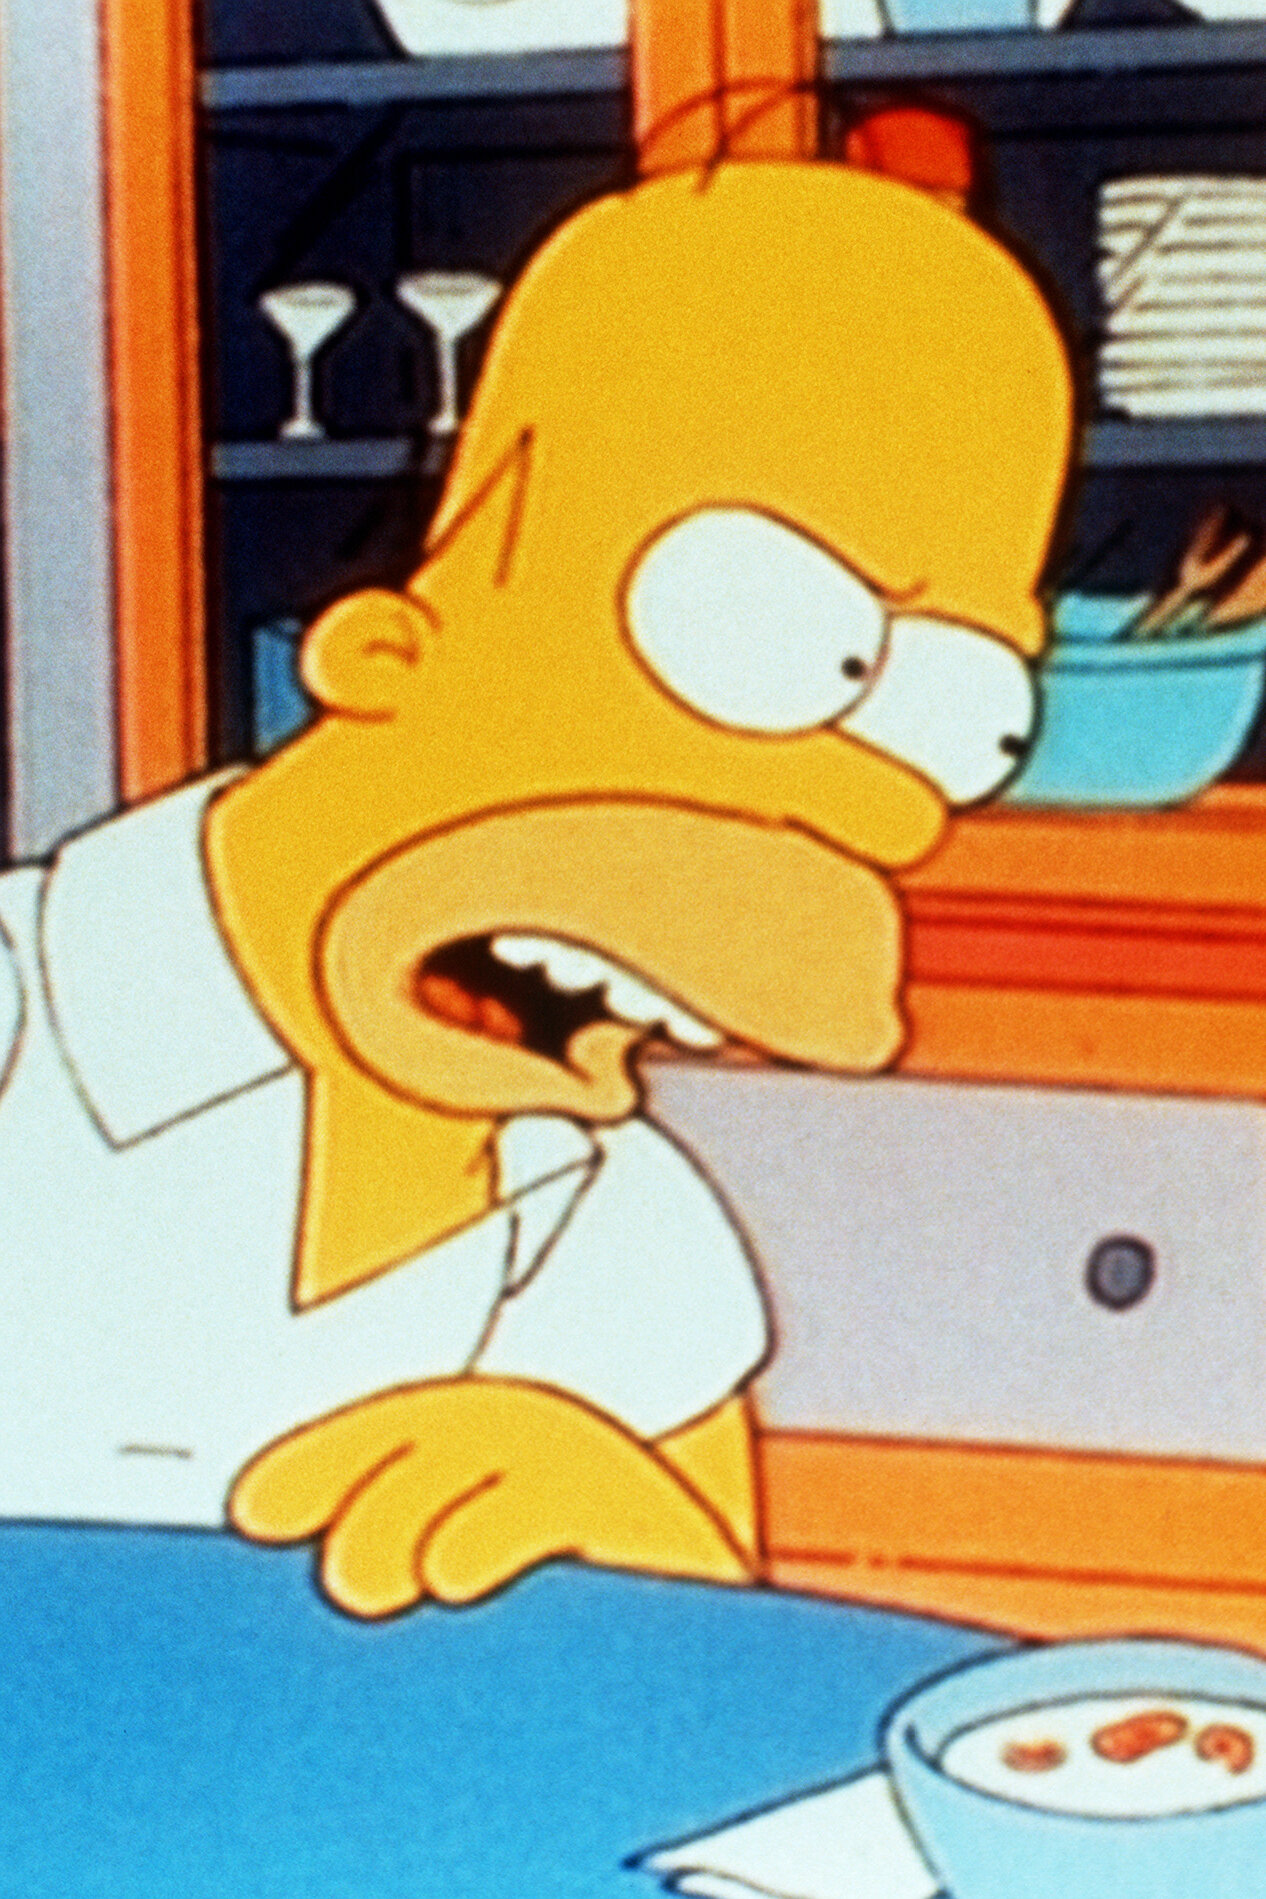 Les Simpson - La Springfield connection